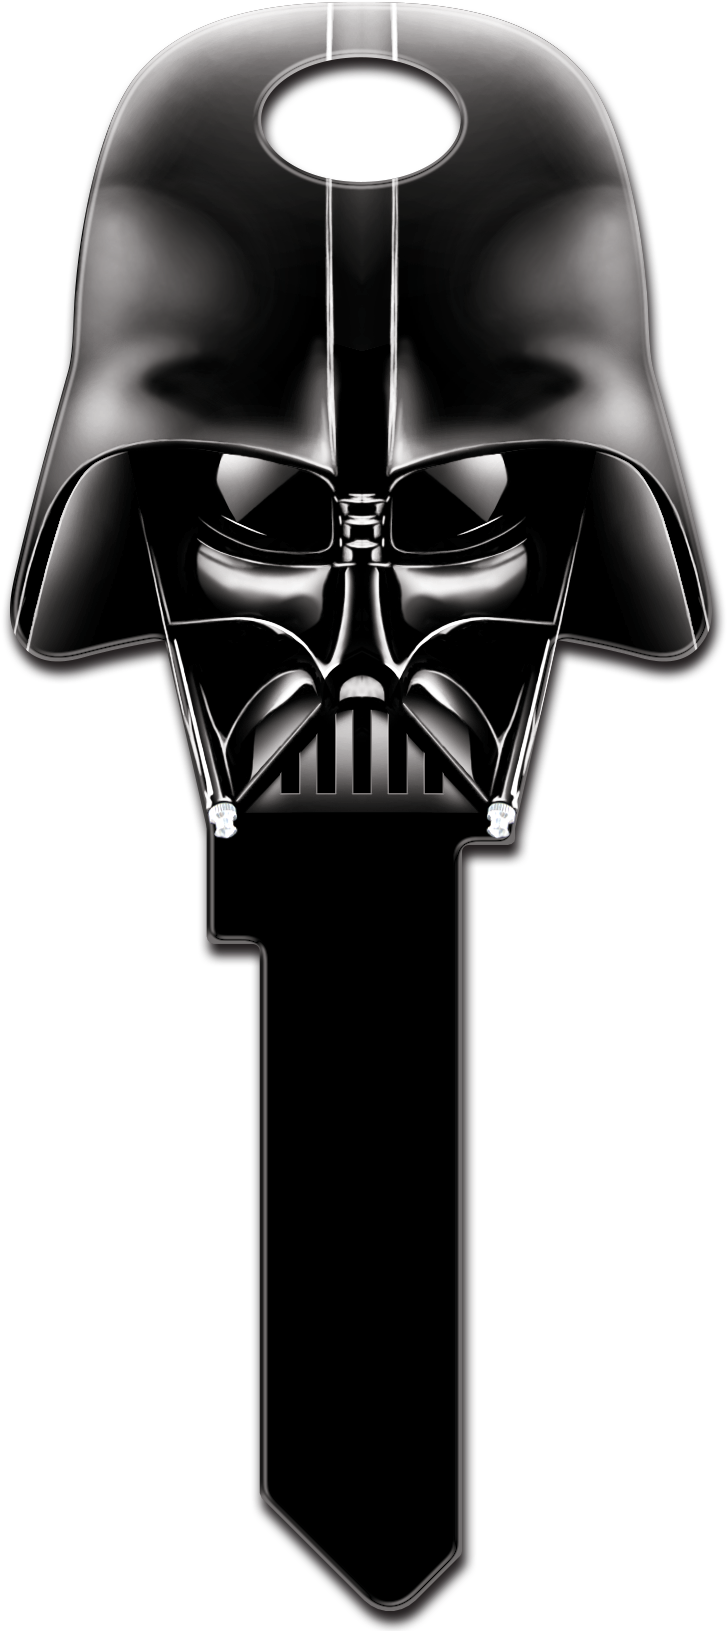 Darth Vader 헬멧 PNG 이미지 배경